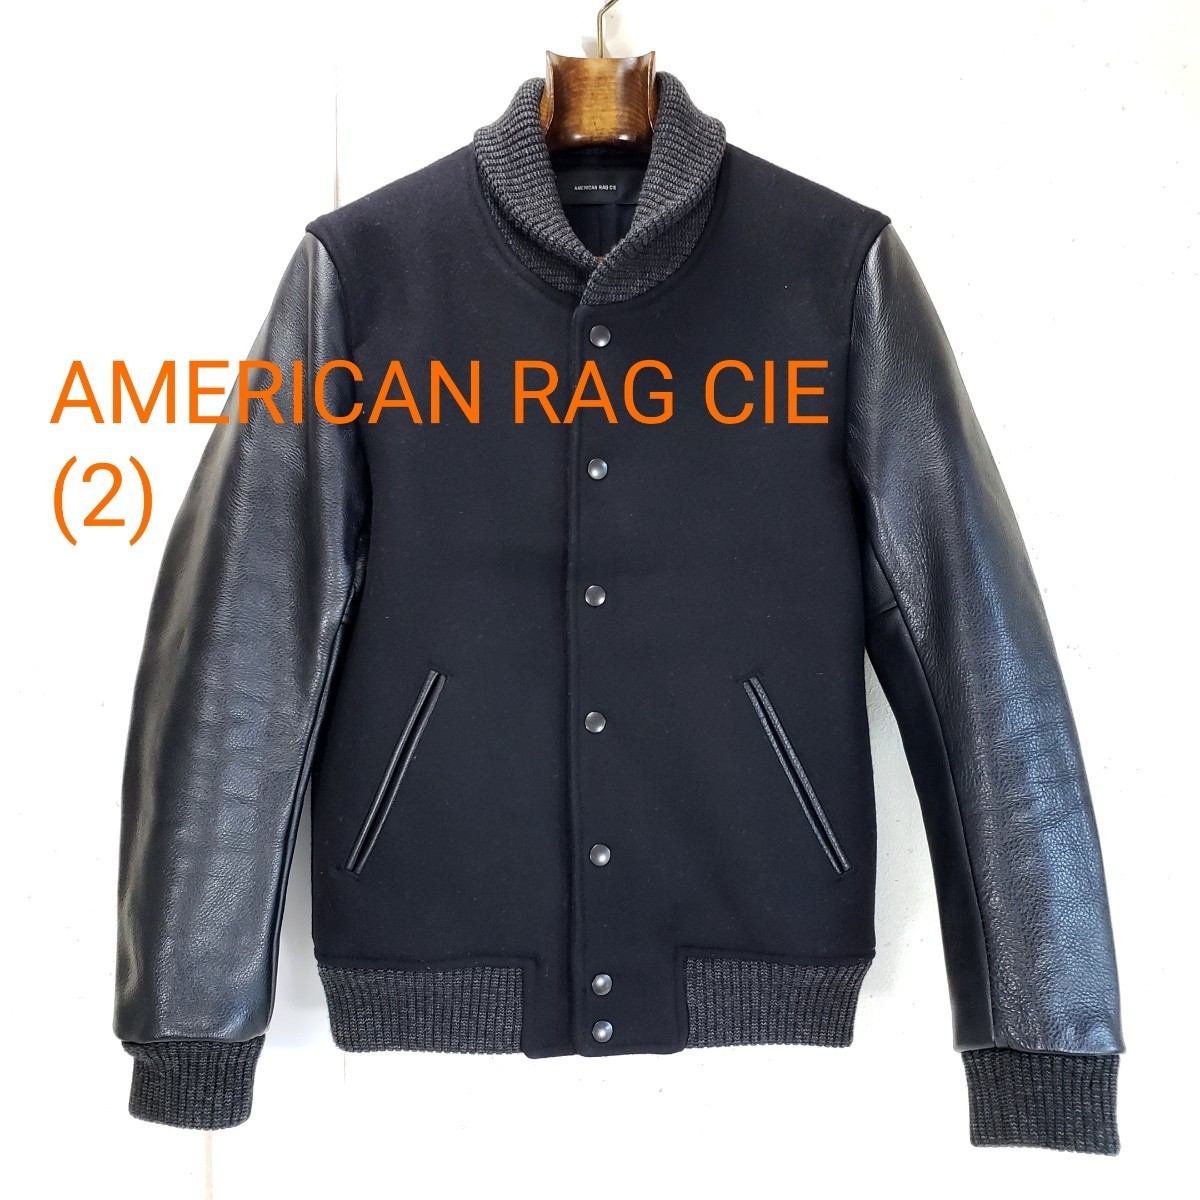 綺麗◆AMERICAN RAG CIE アメリカンラグシー メルトン 牛革 袖革レザー スタジャン メンズ(size 2)黒 ブラック